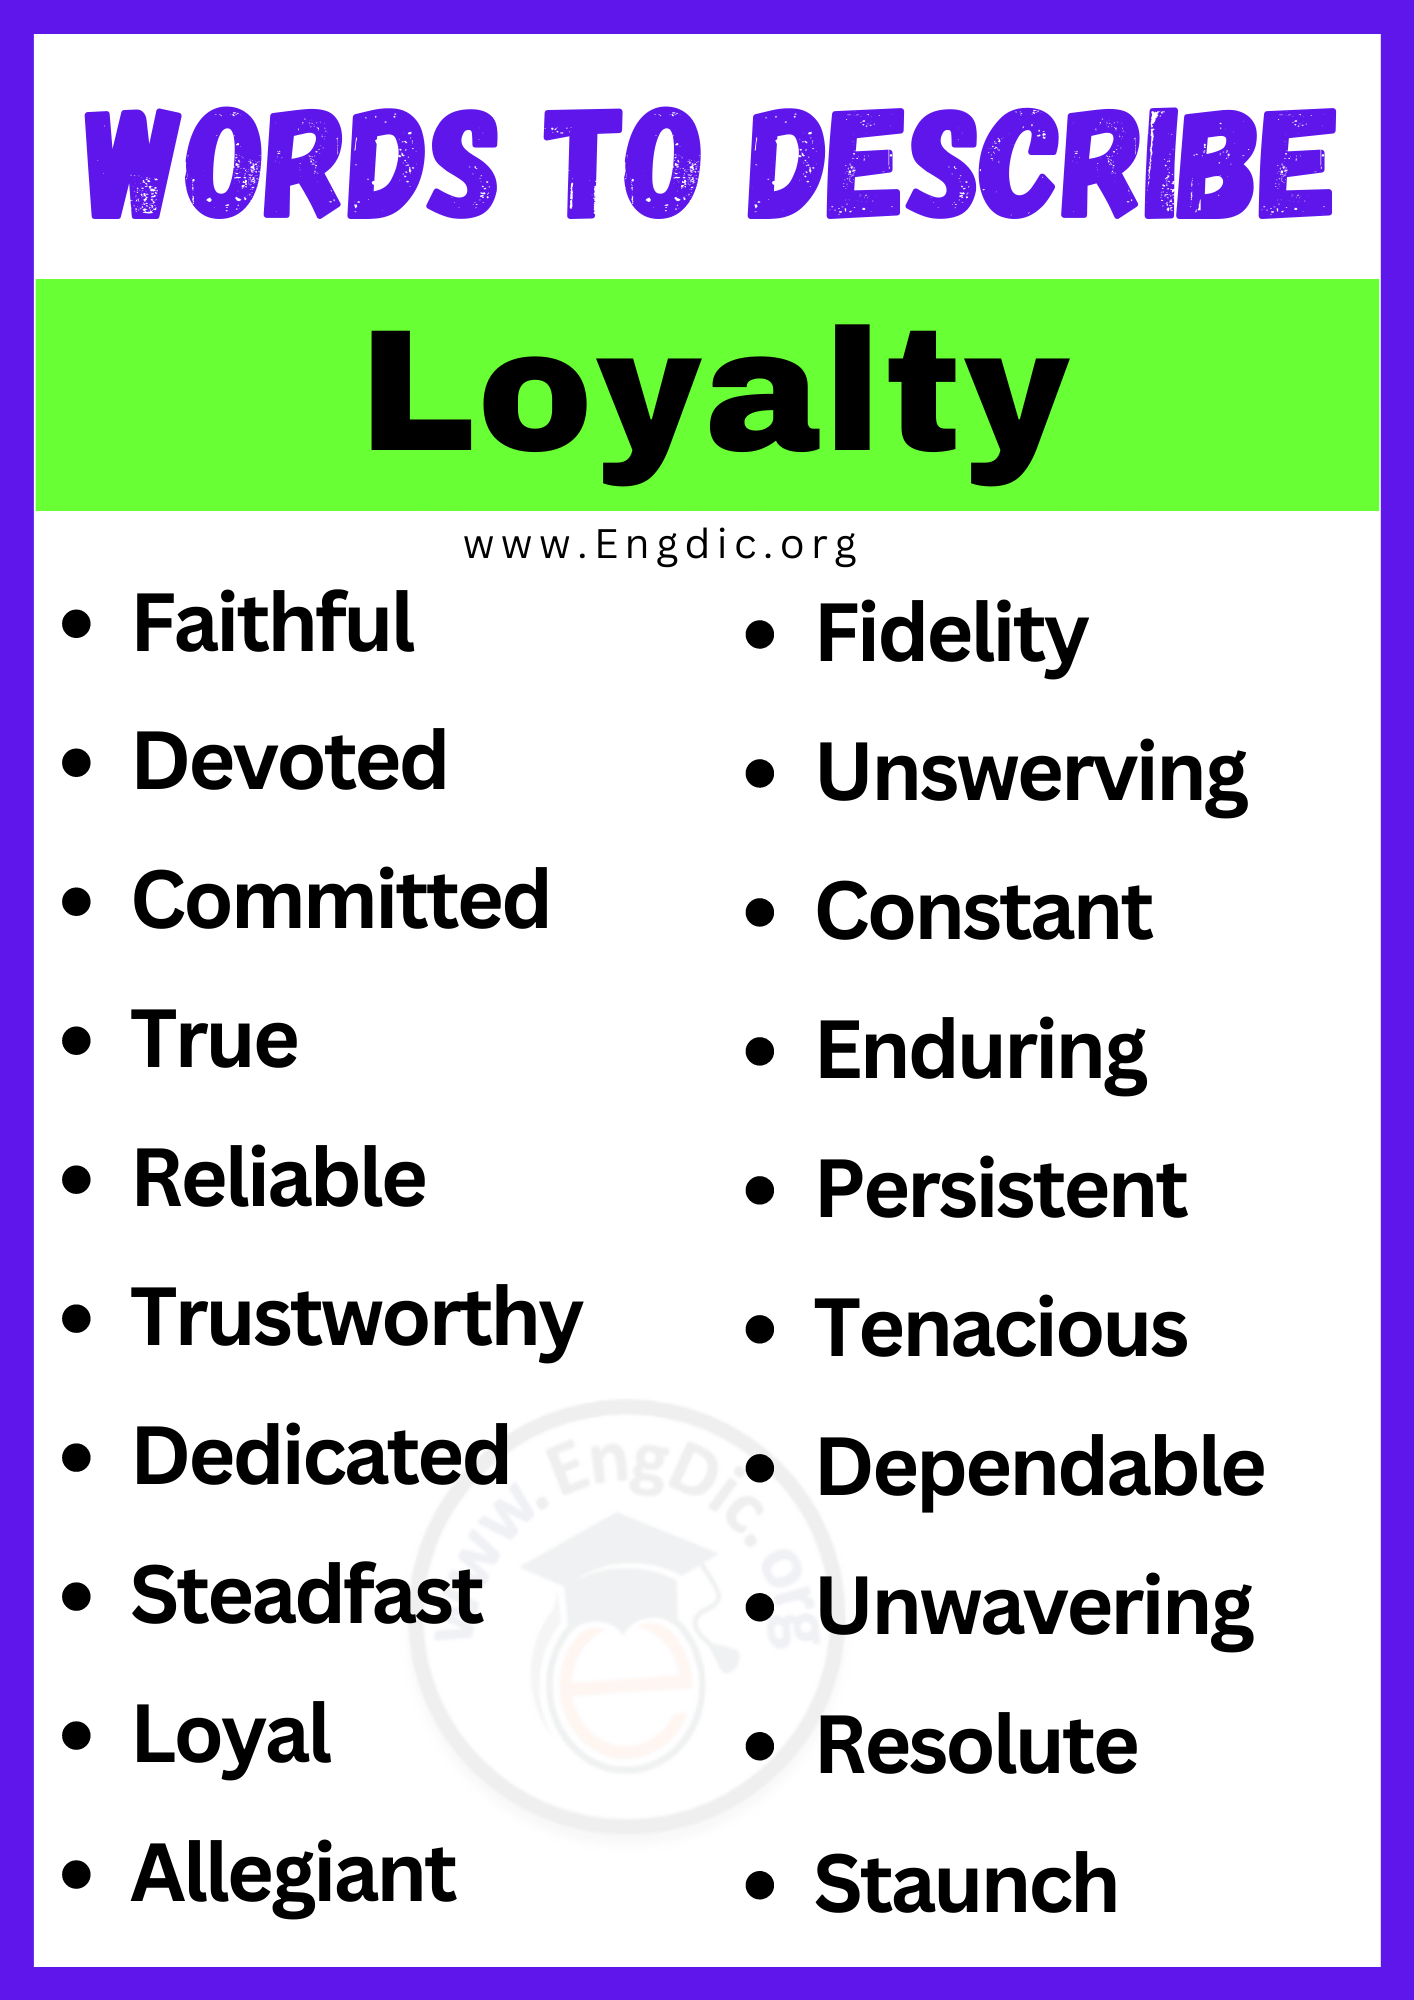 Words to Describe Loyalty